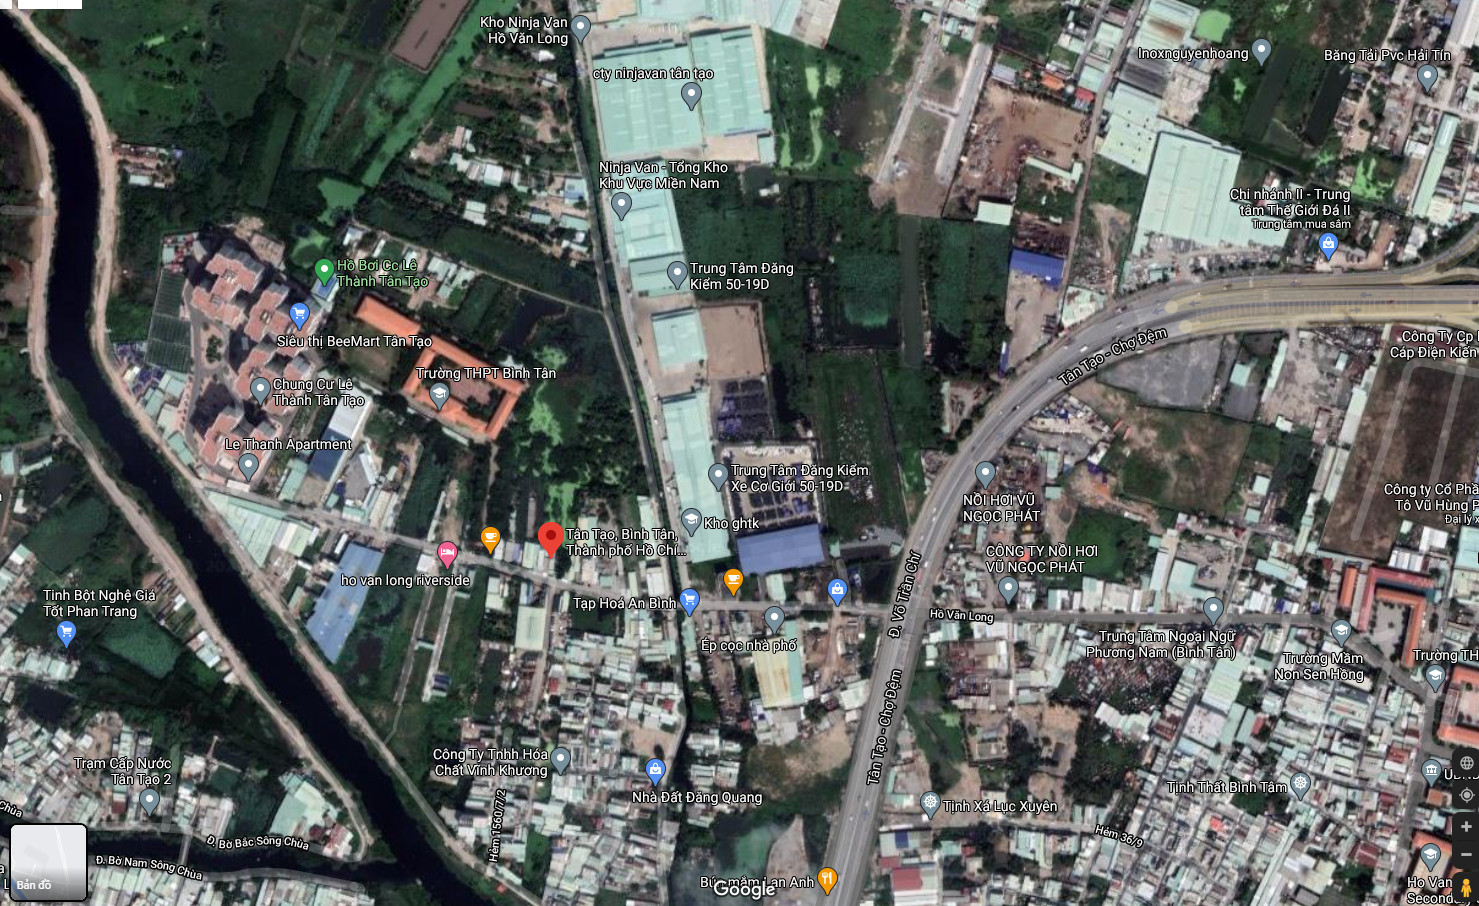 Bán  đất thổ cư 140m² tại đường Hồ văn long, Phường Tân Tạo, Quận Bình Tân, TP. Hồ Chí Minh giá 6.2 tỷ